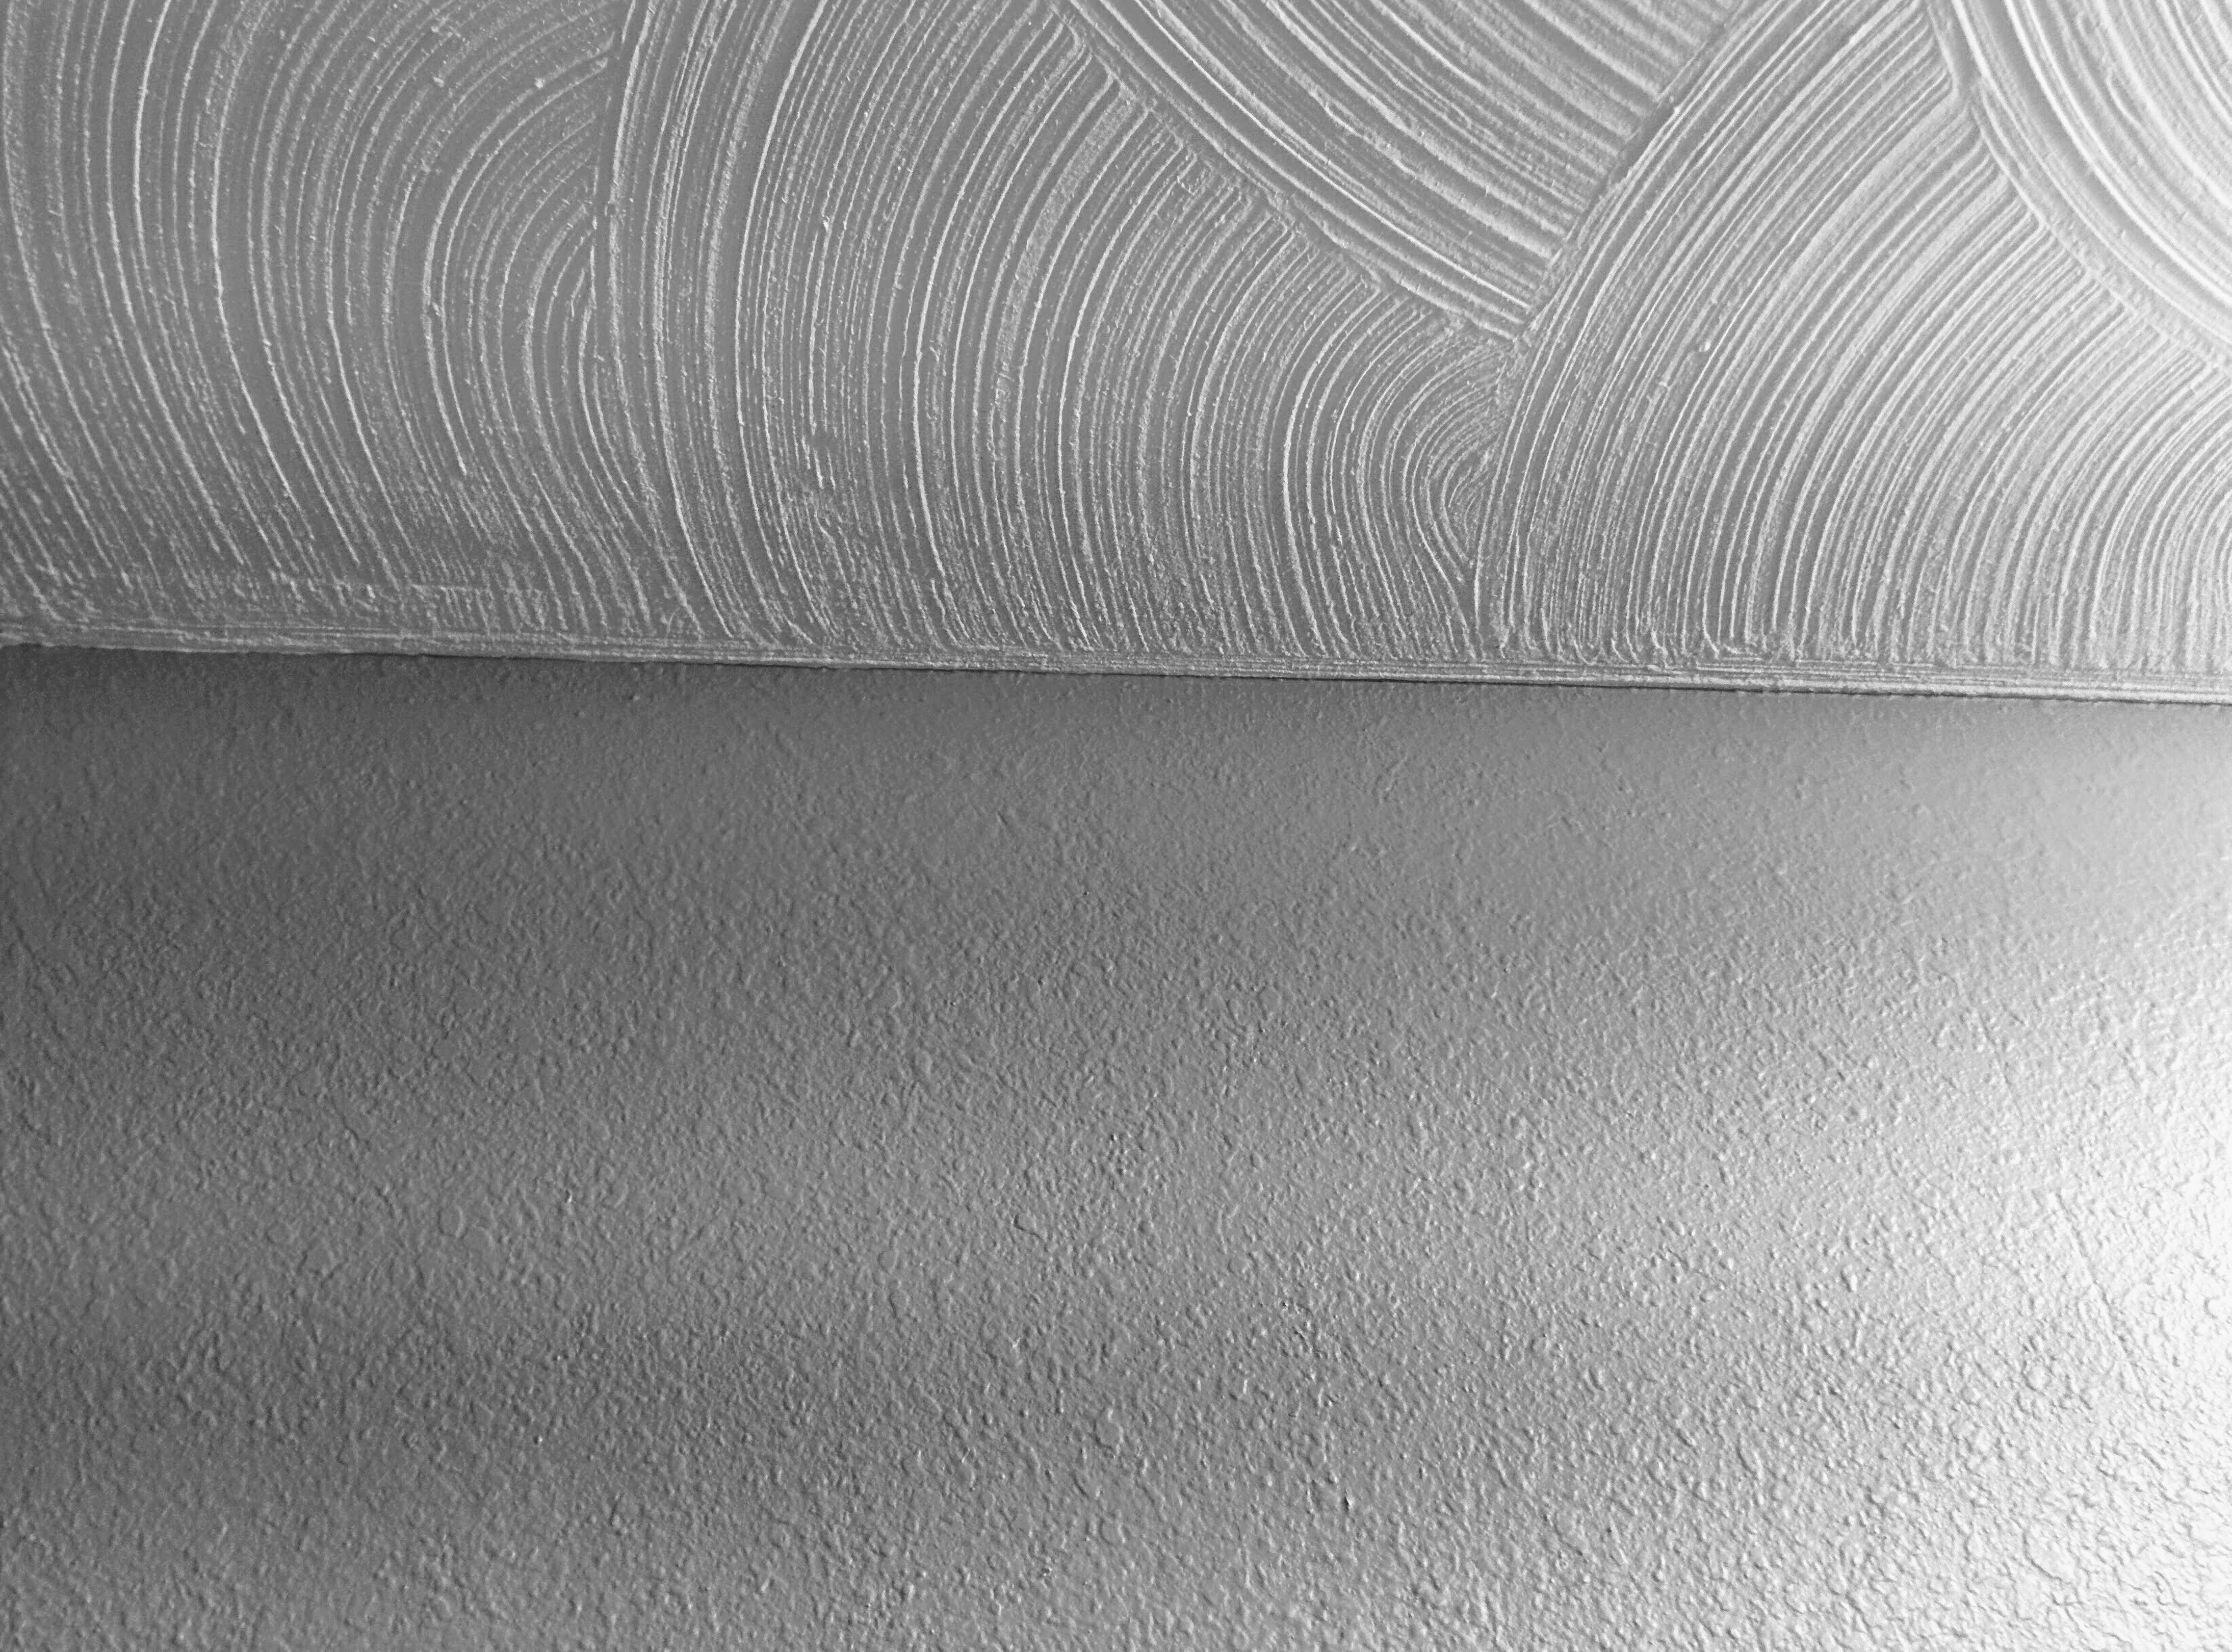 Foto van swirl drywall textuur op het plafond en knockdown textuur op de muur